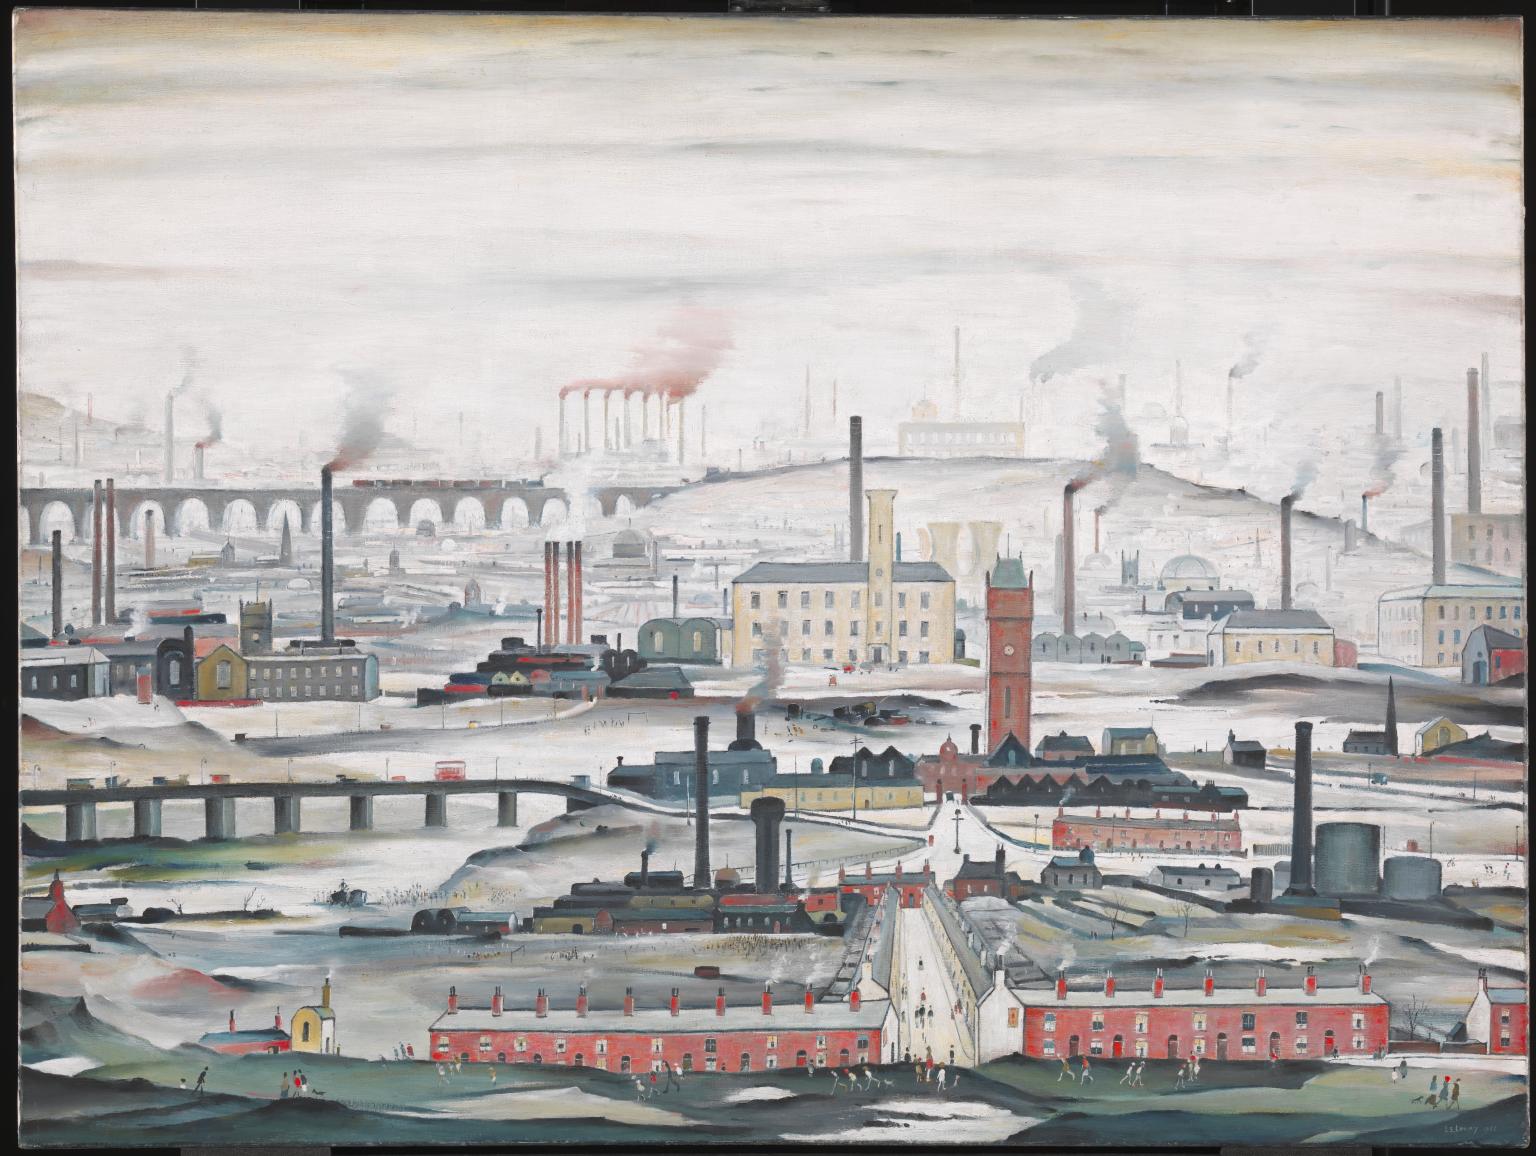 “工业景观”（1955 年）——被广泛认为是洛瑞绘画和版画中最著名的主题